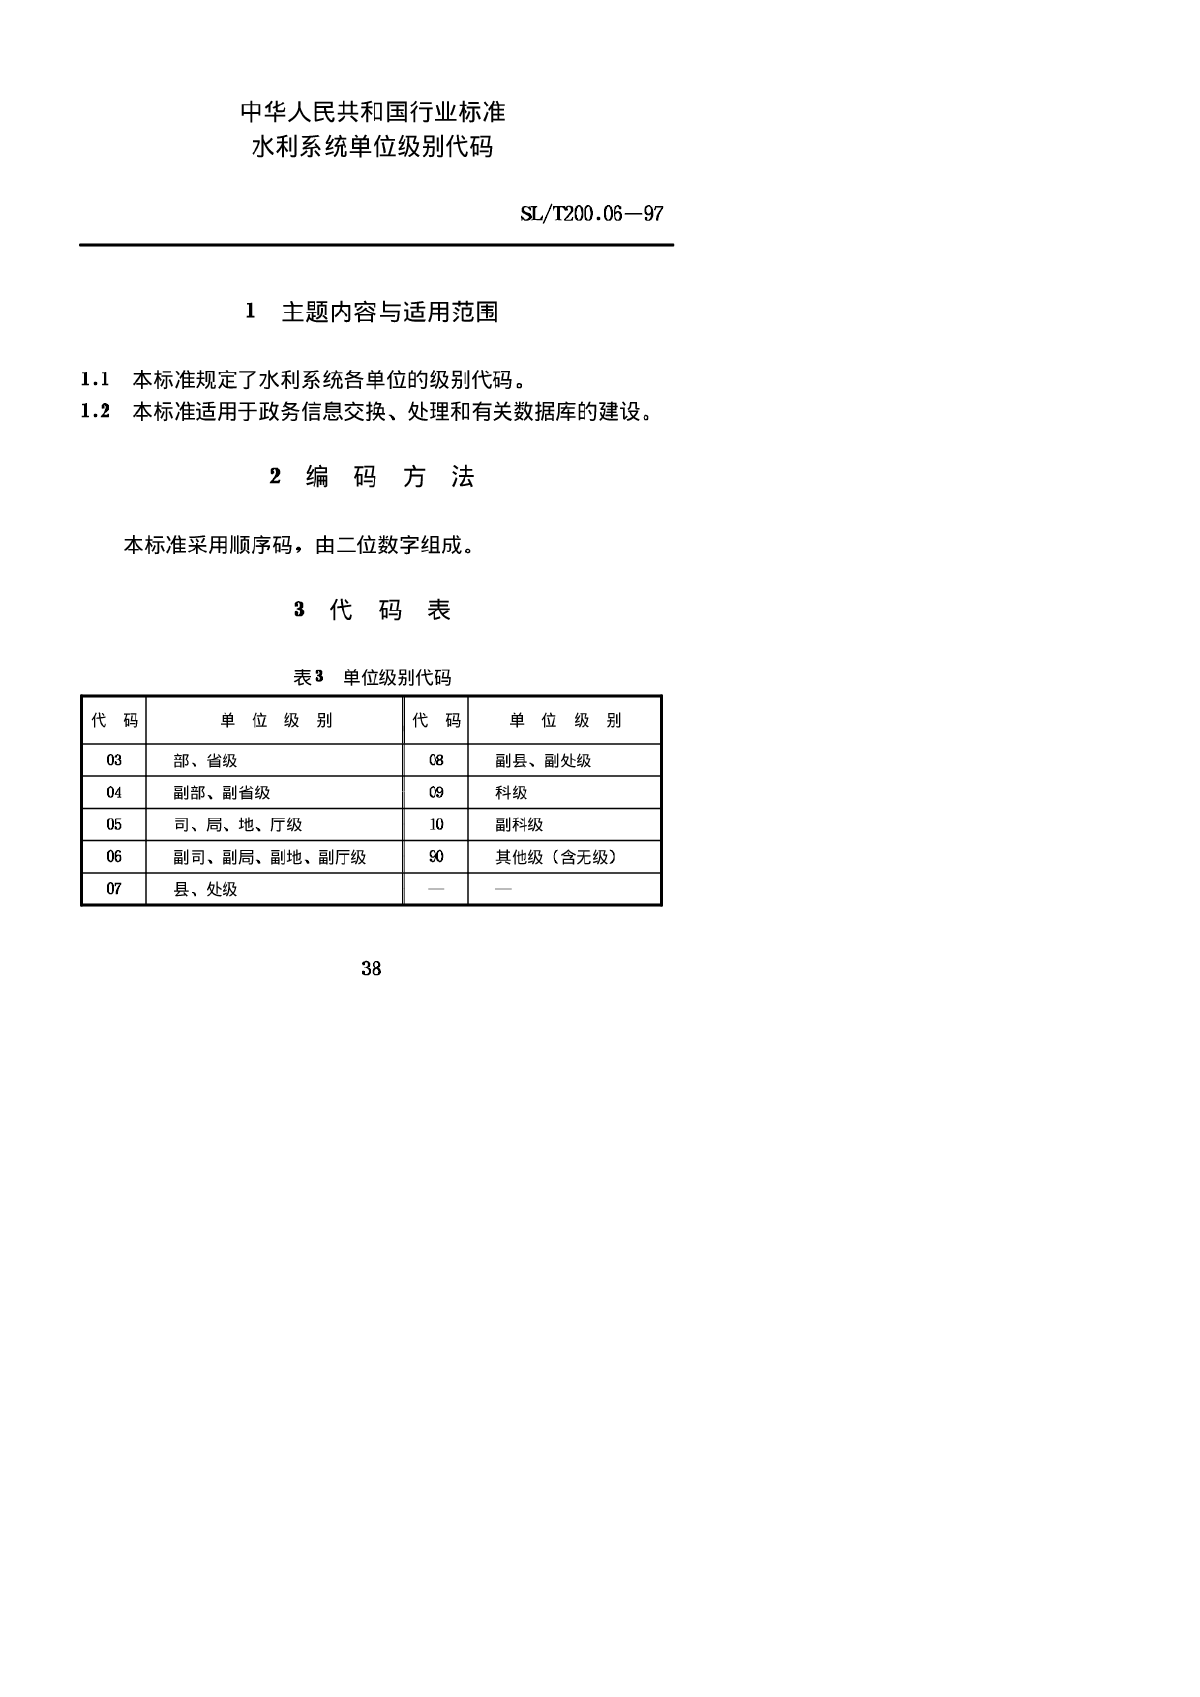 SLT 200.06-1997 水利系统单位级别代码-图一